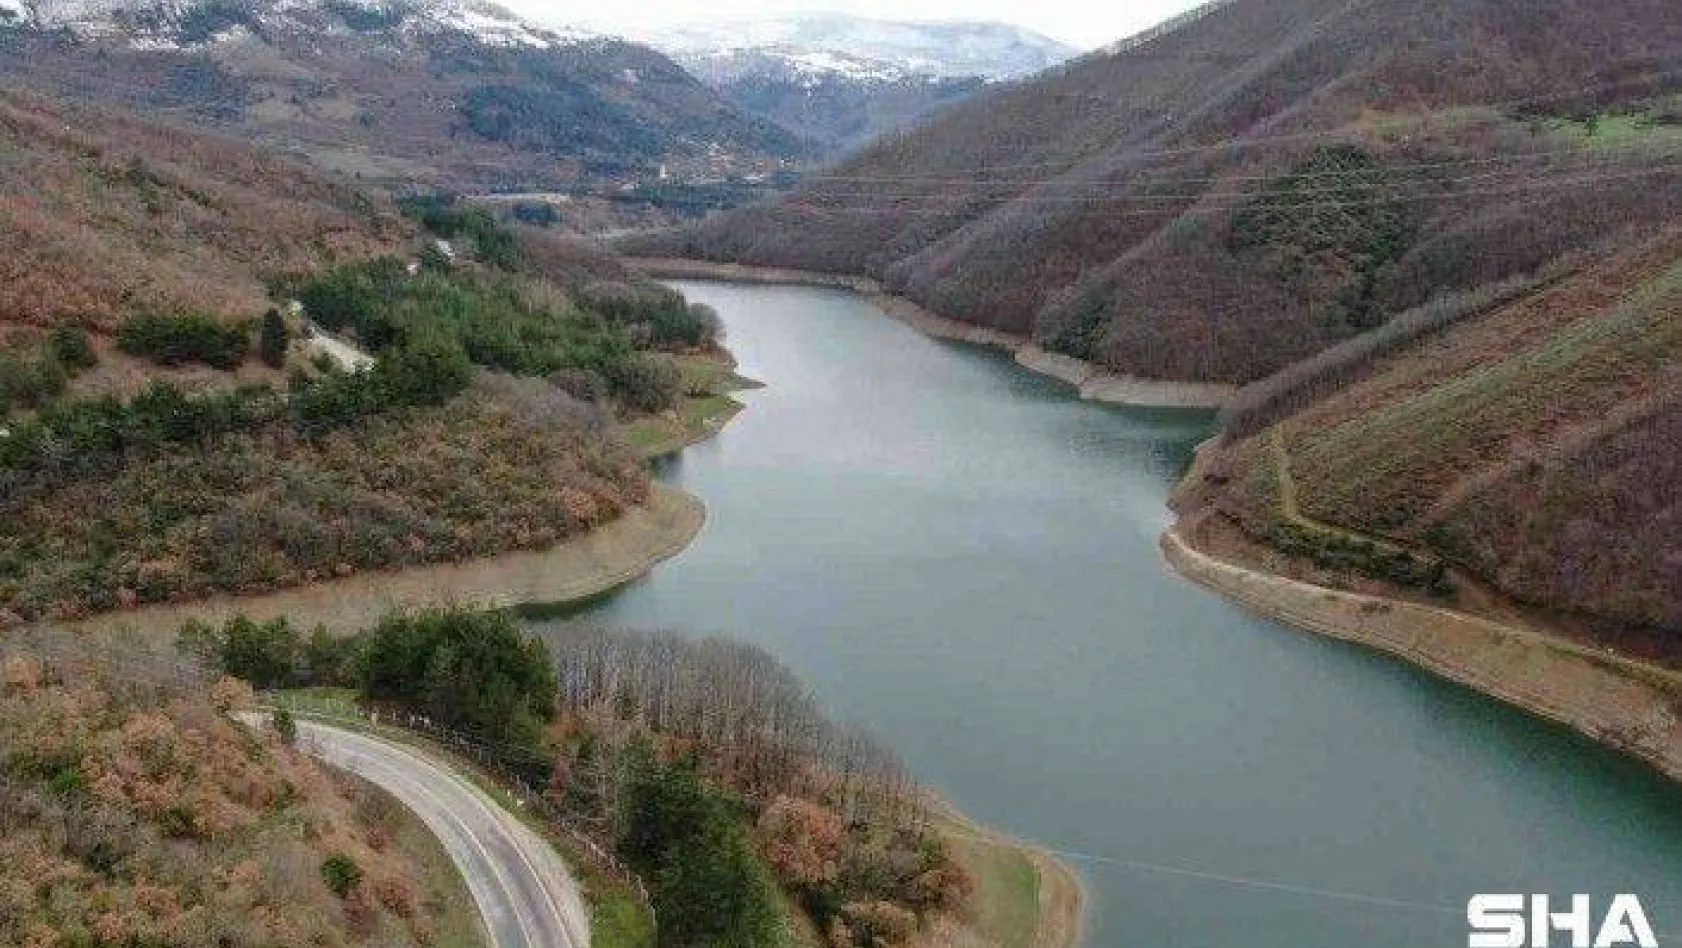 (Özel) Bursa'nın barajları doluyor...Yoğun kar yüreklere su serpti